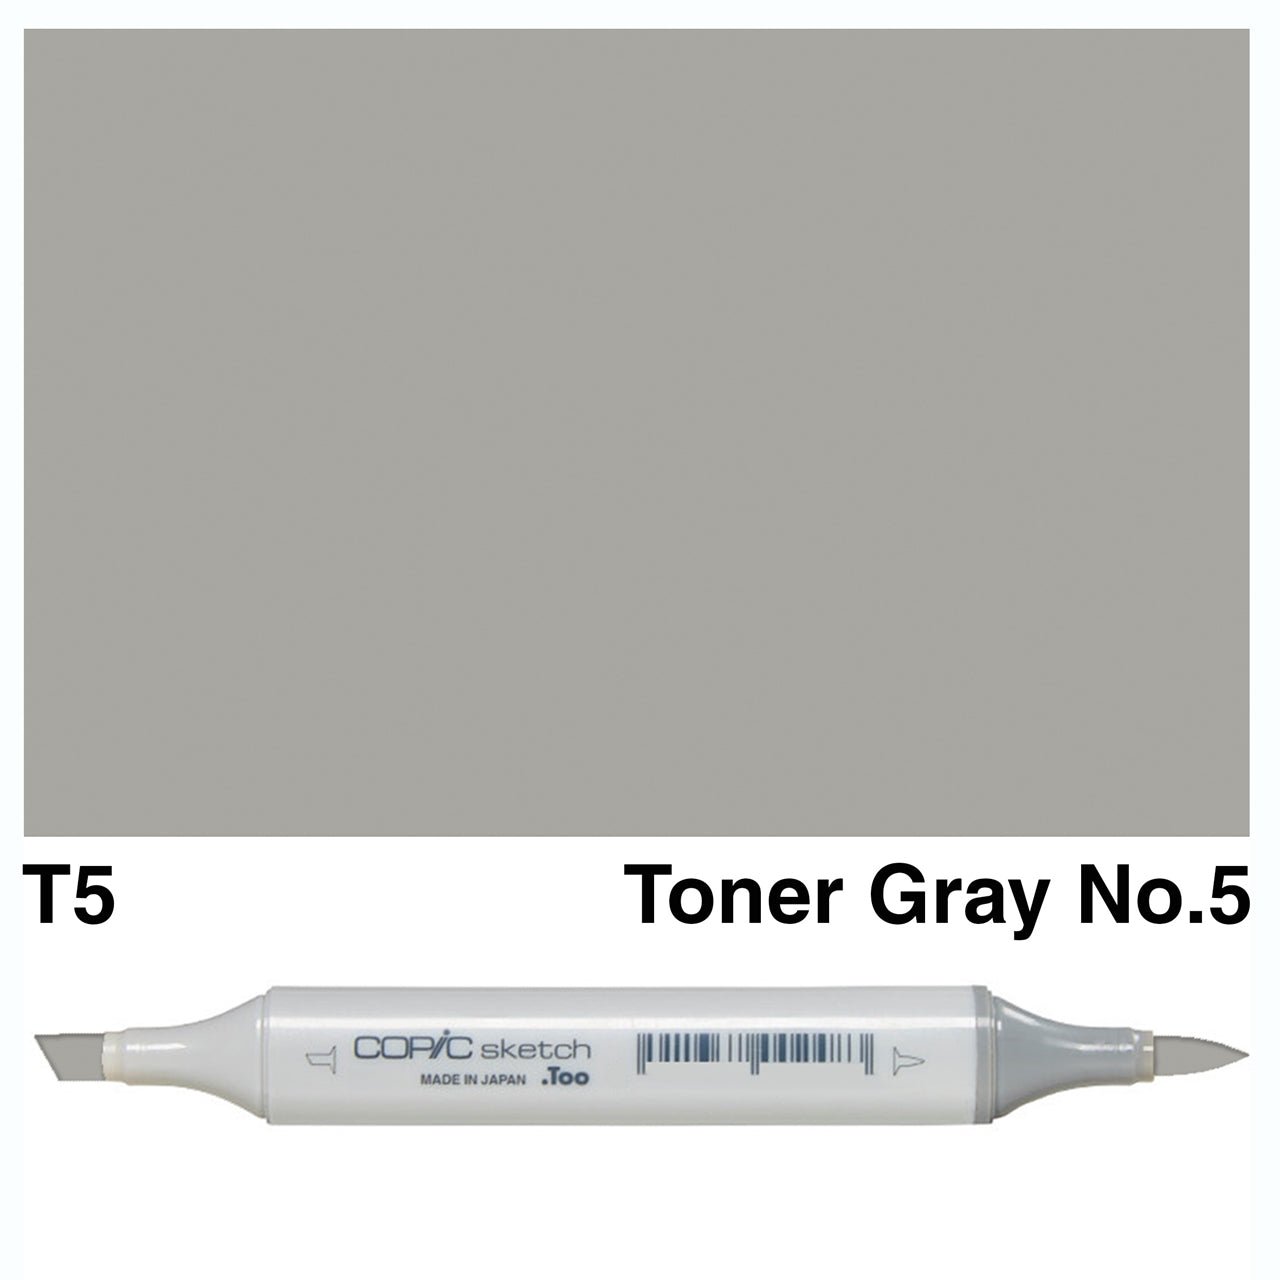 Copic Sketch T5 Toner Gray No.5 - theartshop.com.au